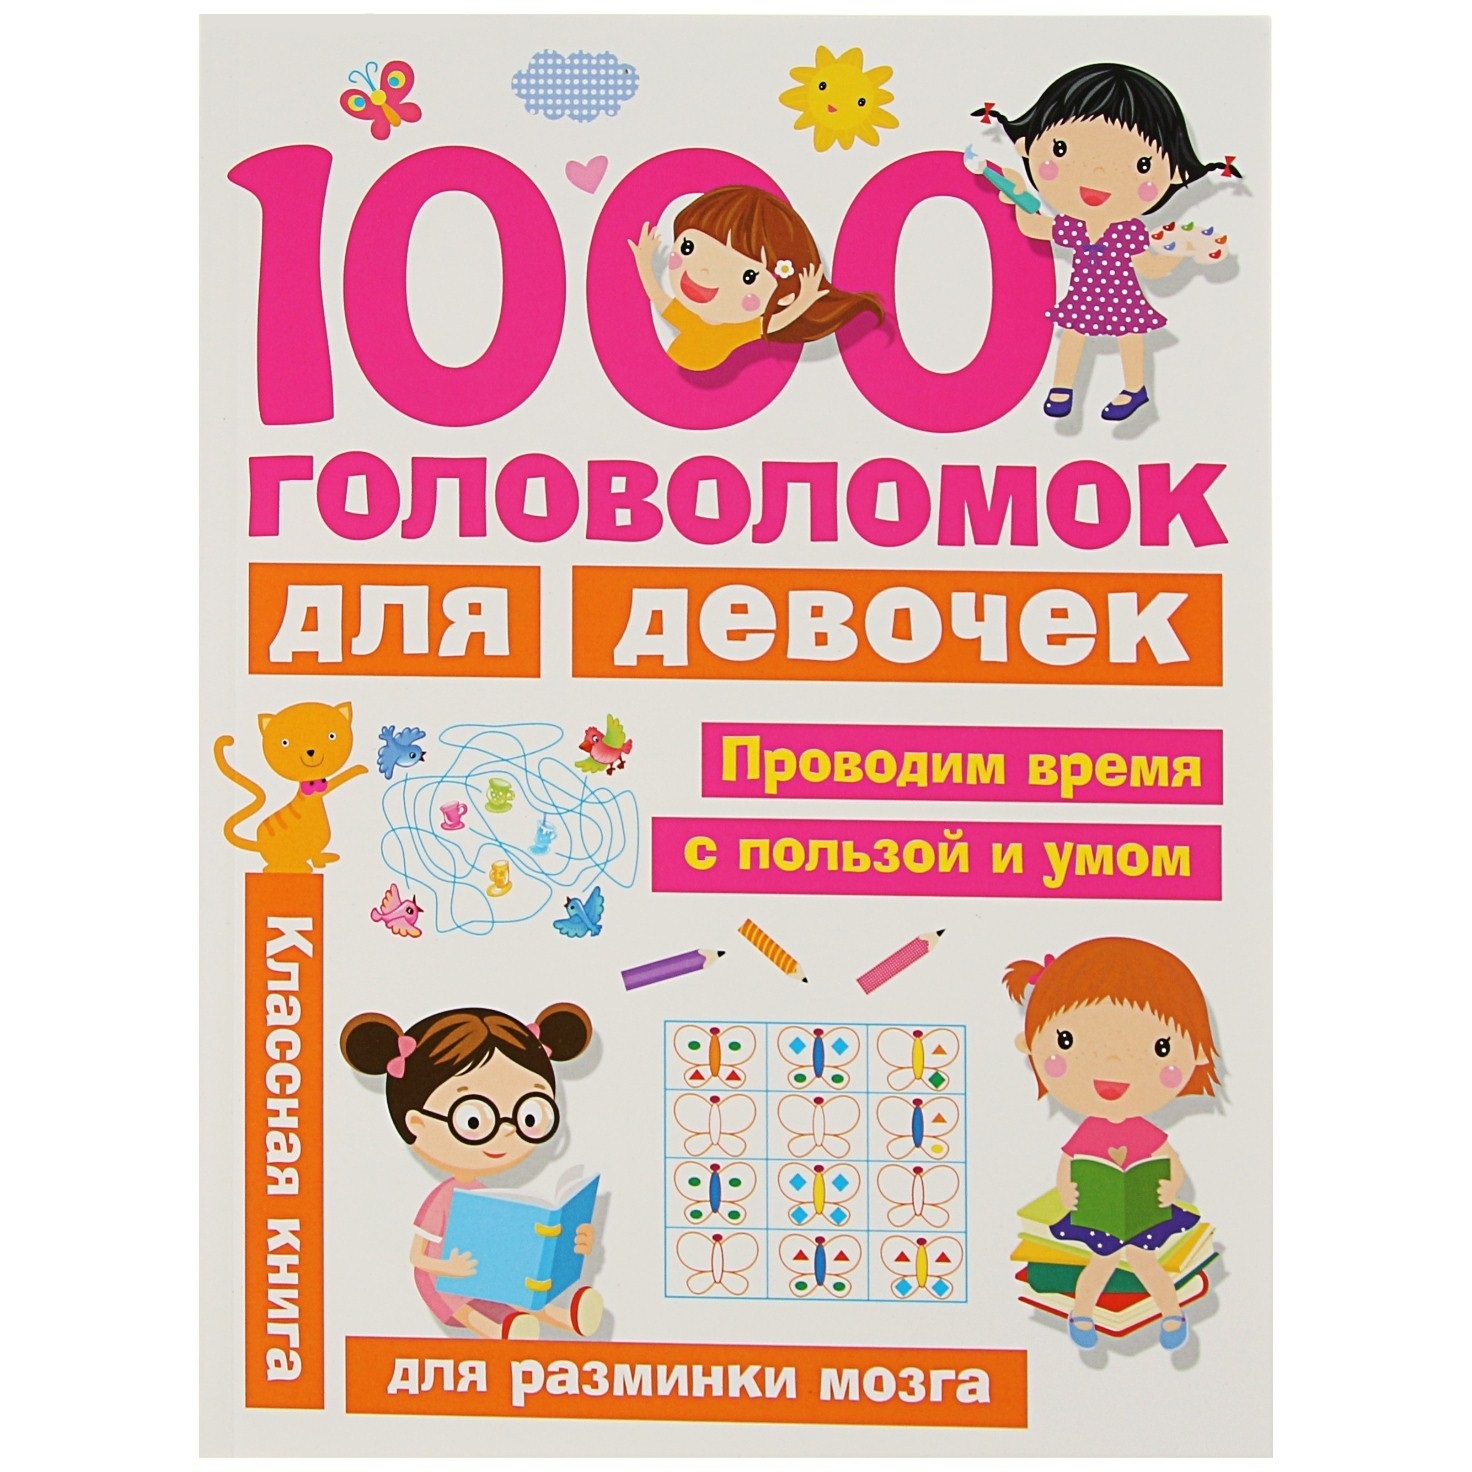 Занимголдев. 1000 головоломок для девочек. дмитриева в.г. 3397343